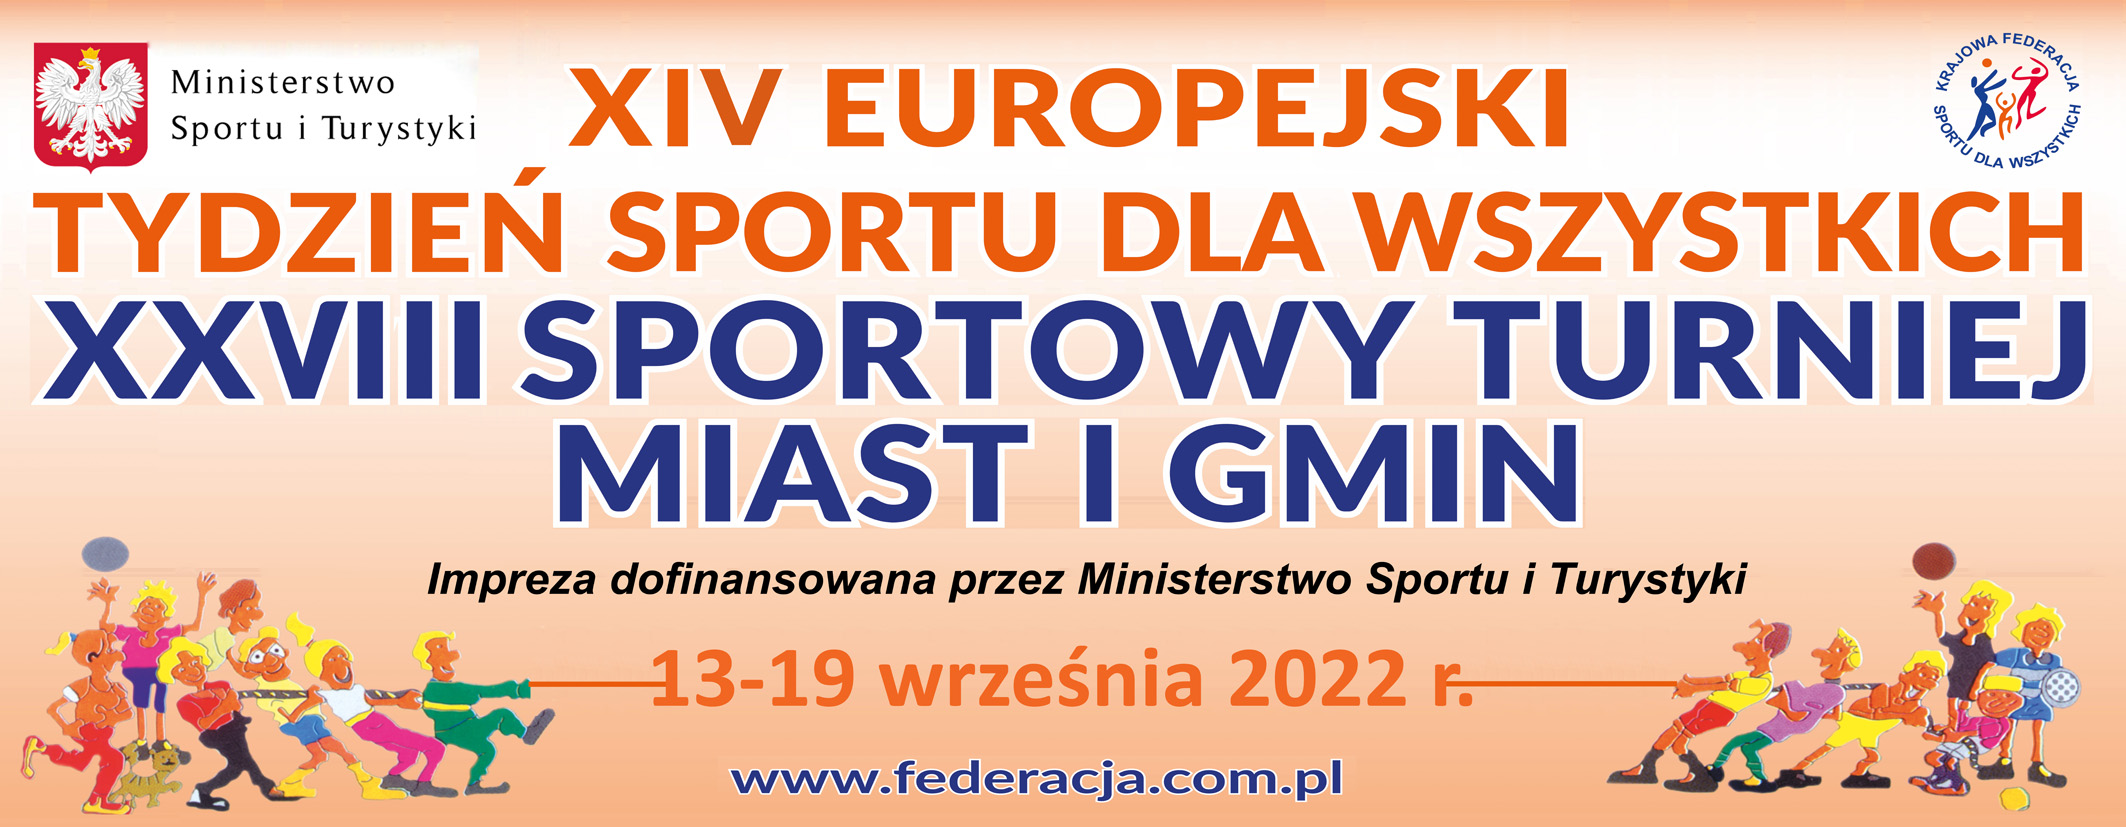 XXVIII Sportowy Turniej Miast i Gmin 2022